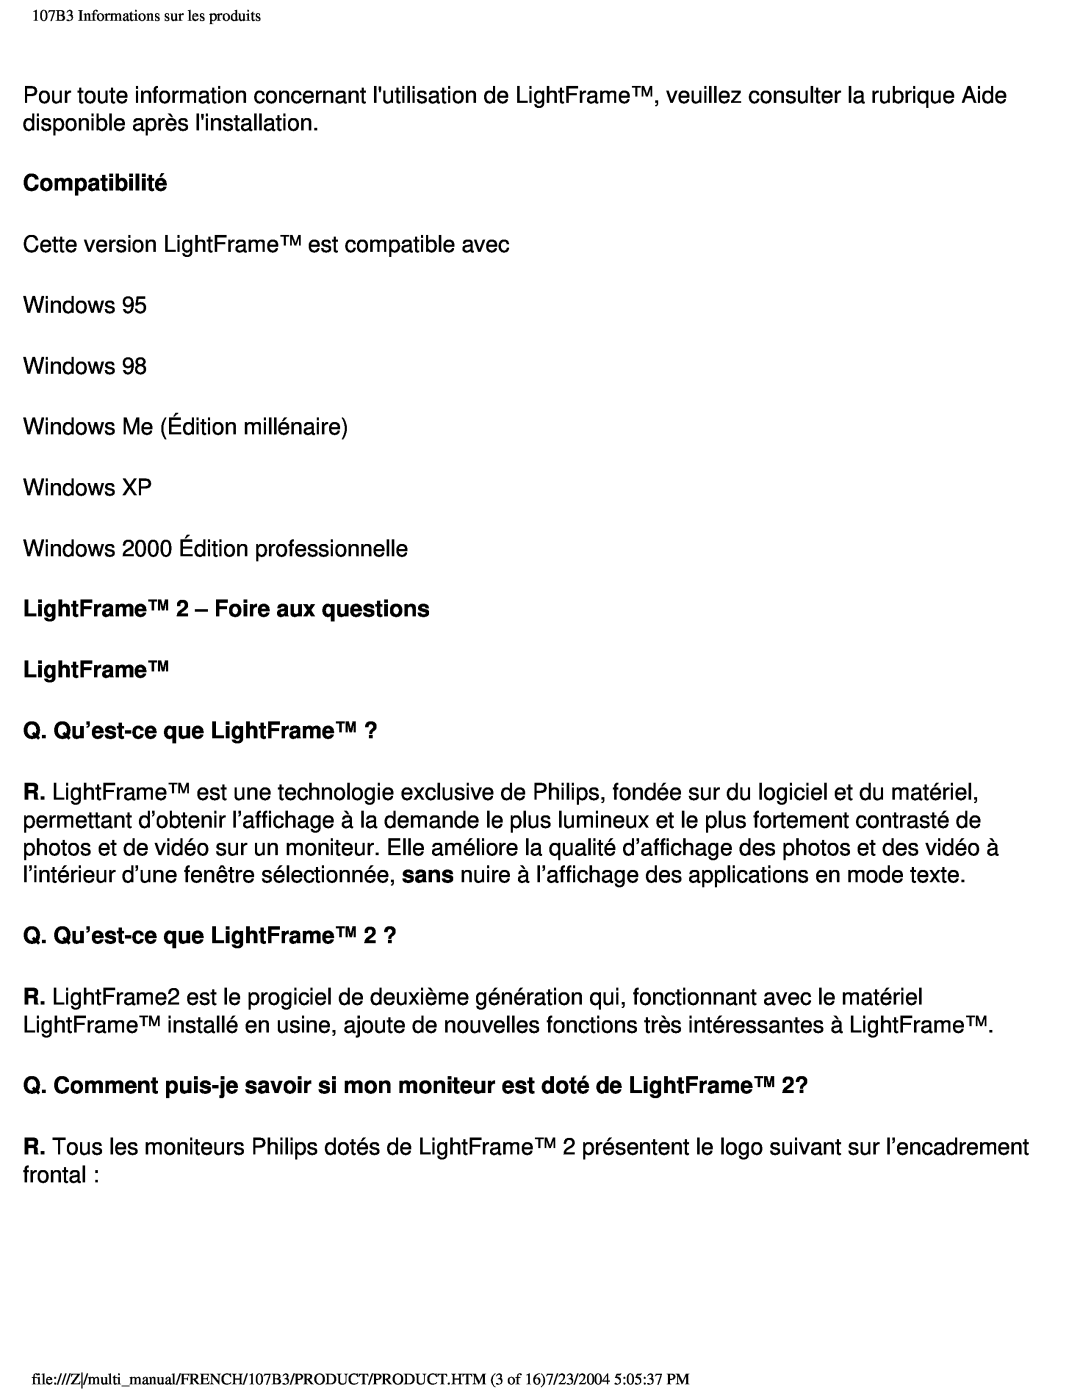 Philips 107B3 user manual Compatibilité, LightFrame 2 – Foire aux questions LightFrame, Q. Qu’est-ceque LightFrame ? 